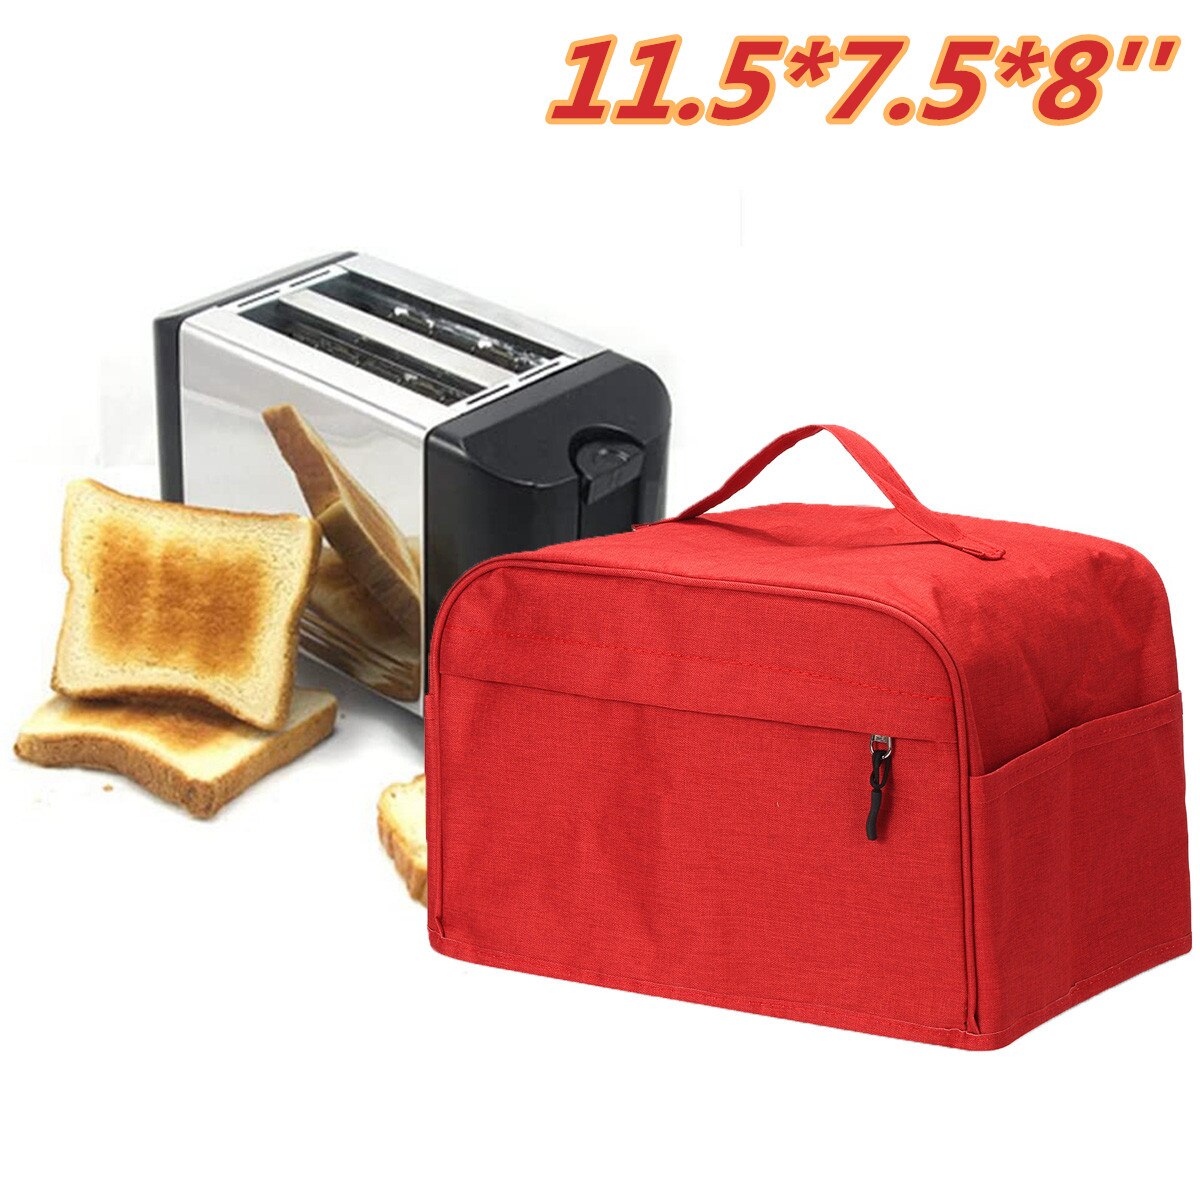 2 or 4 skive brødrister dækning toast maskindæksel bakeware polyester betræk beskytter støvtæt køkken rent værktøj husstand: 11.5 x 7.5 x 8 tommer rød